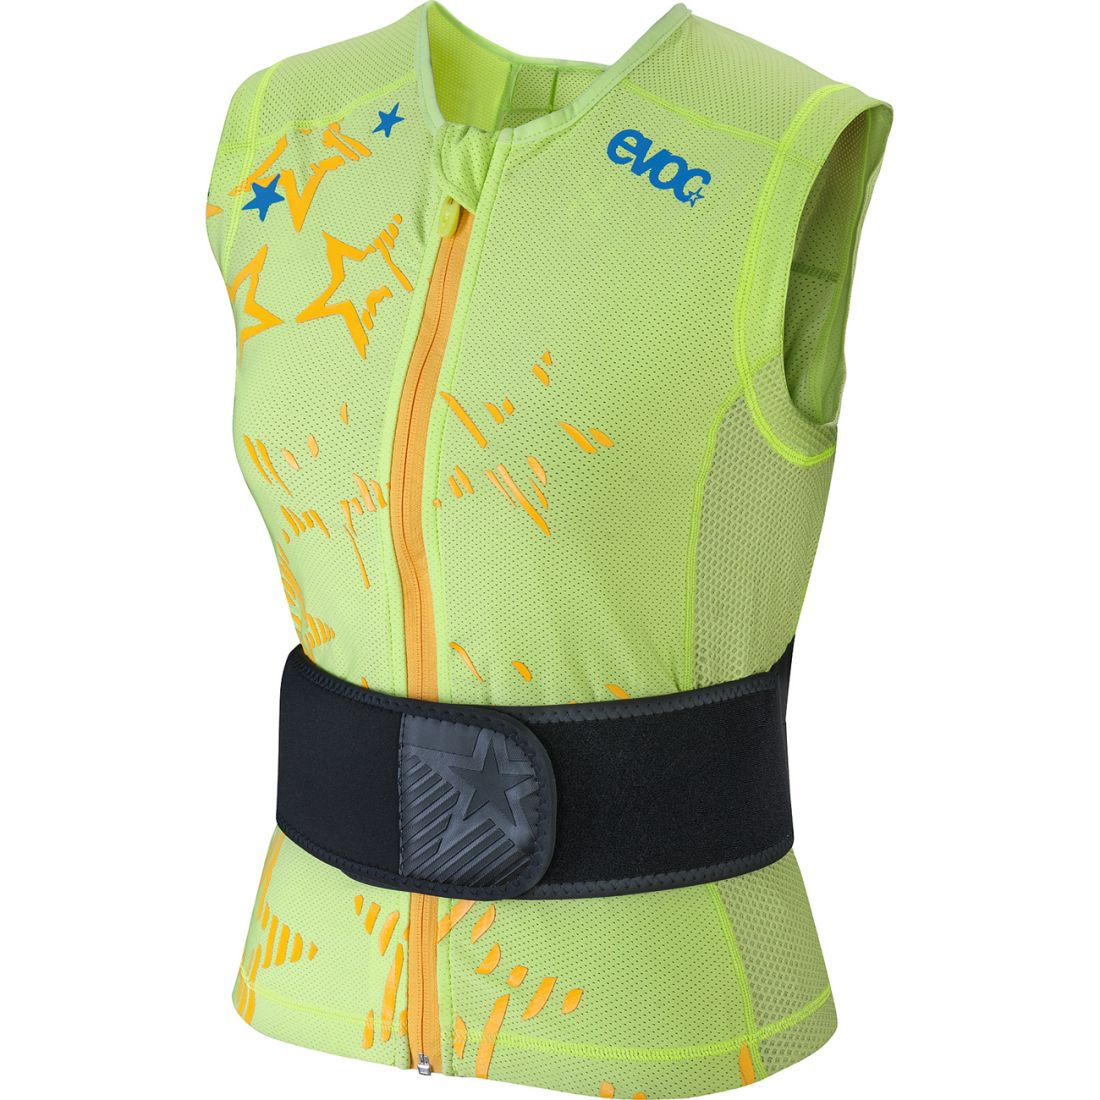 Evoc - Легкий женский защитный жилет Protector Vest Lite